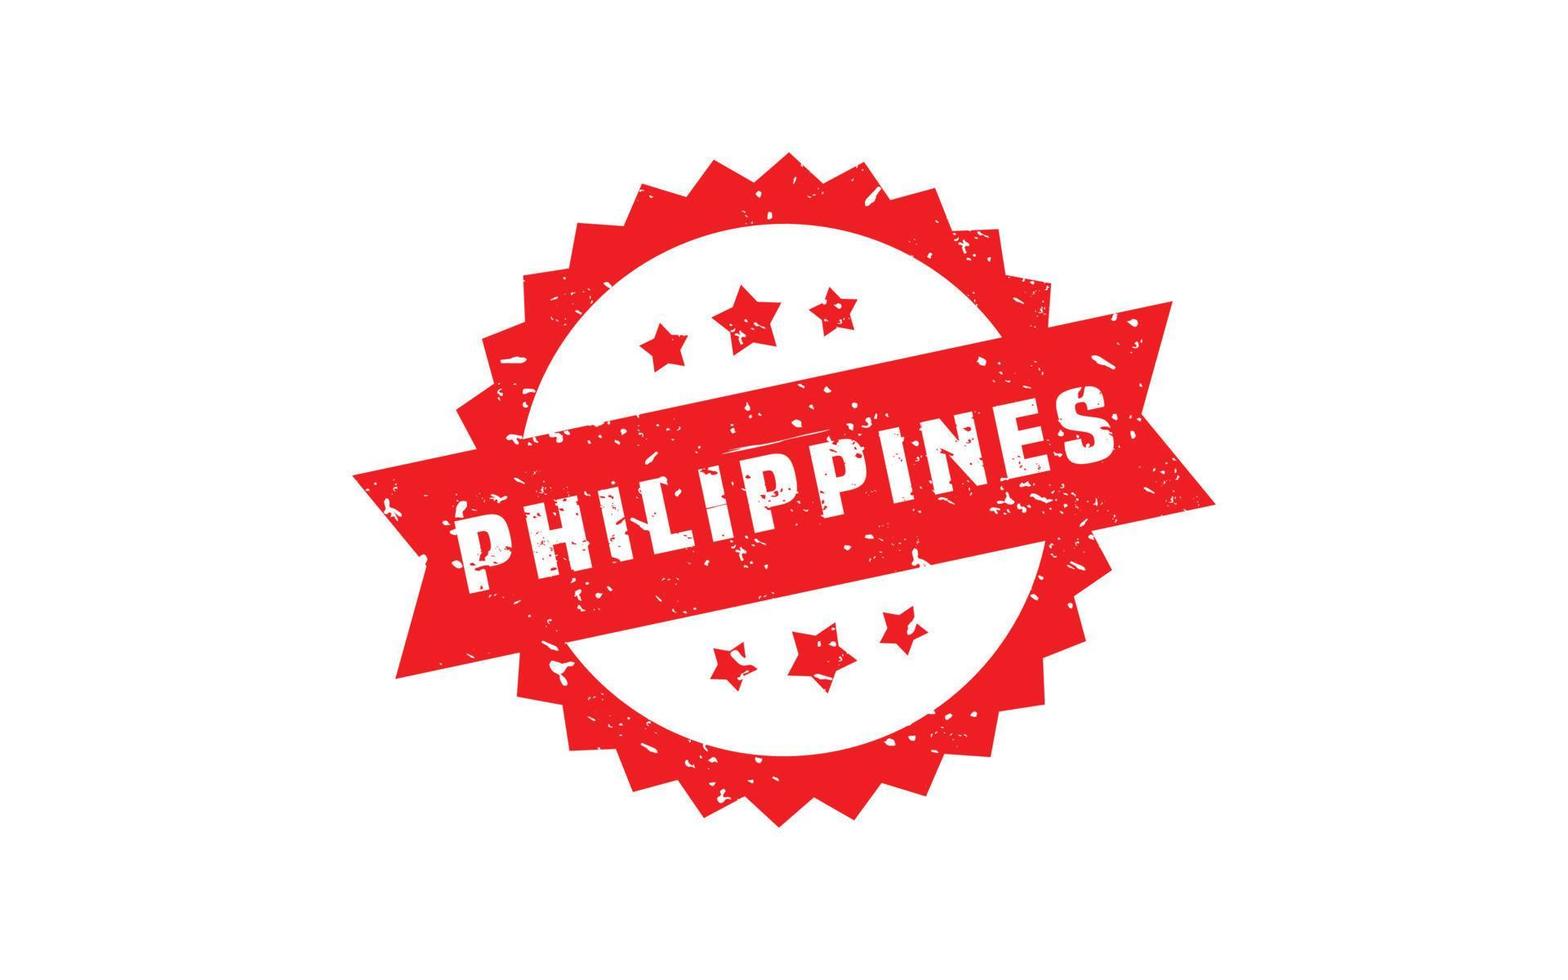 caoutchouc de timbre des philippines avec style grunge sur fond blanc vecteur